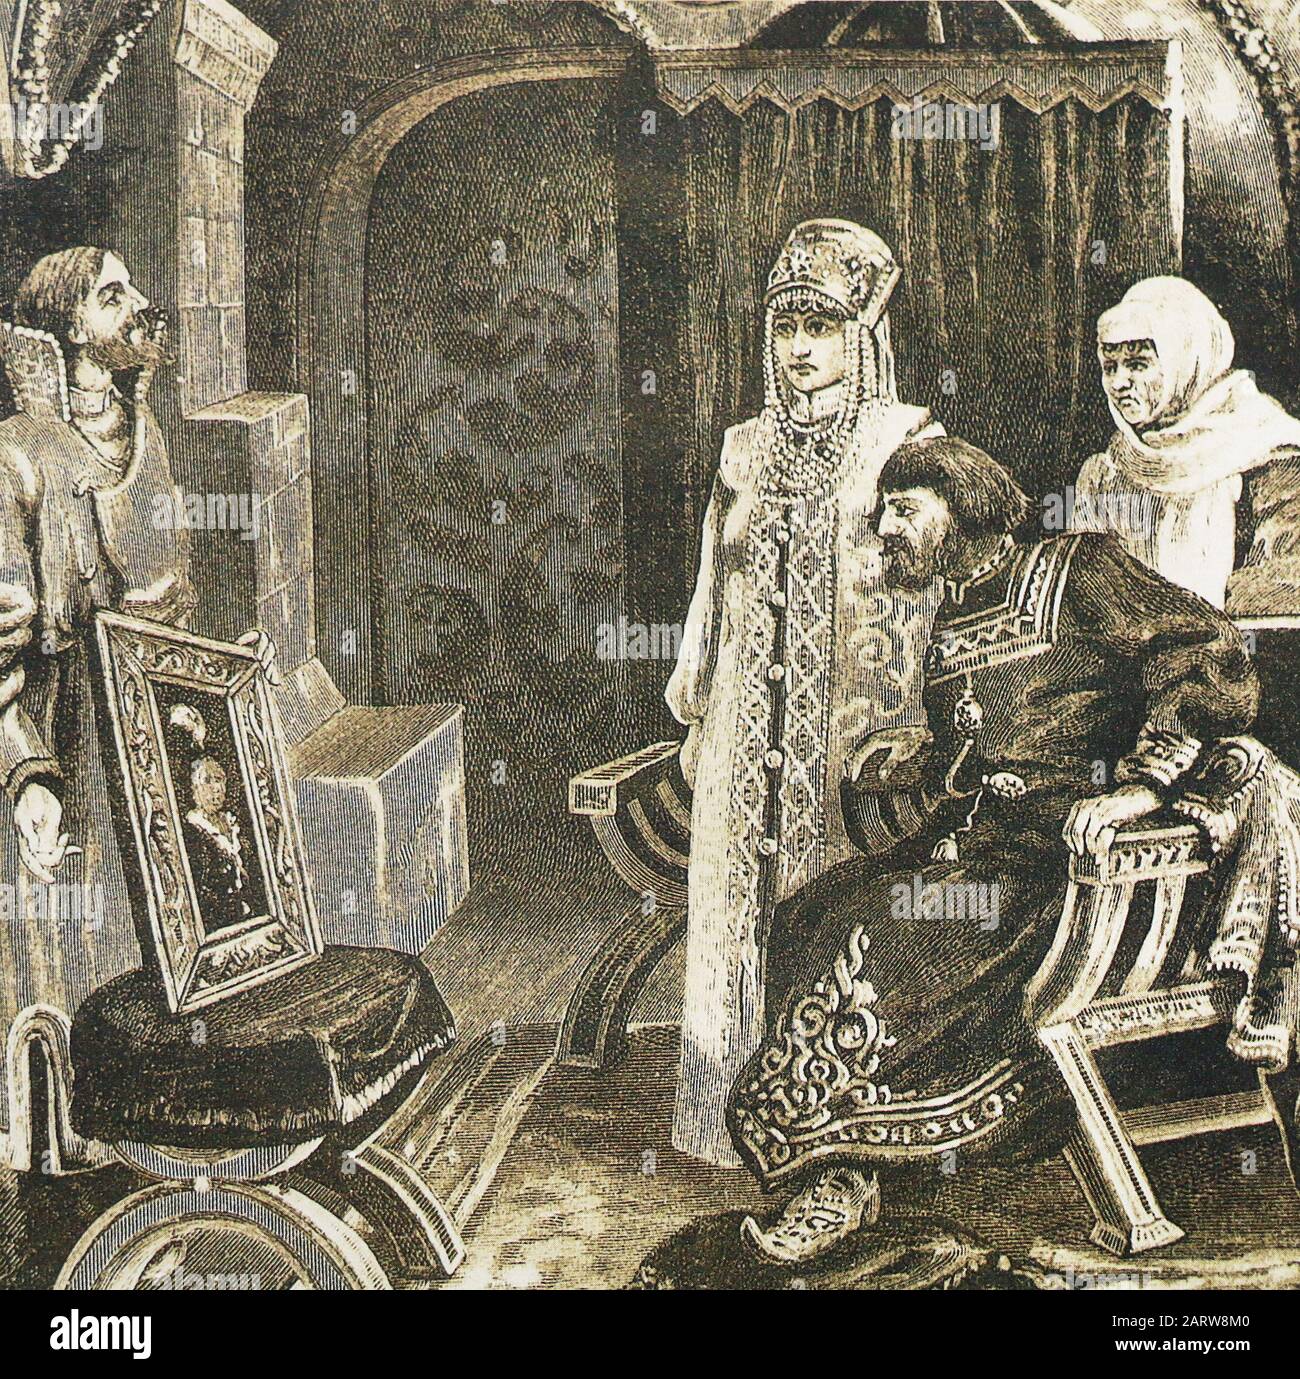 Botschafter Iwan Fryazin stellt Großfürst Iwan III. Wassilyewitsch ein Porträt von Sophia Paleolog vor. Gemälde von Victor Mougel, 19. Jahrhundert. Stockfoto